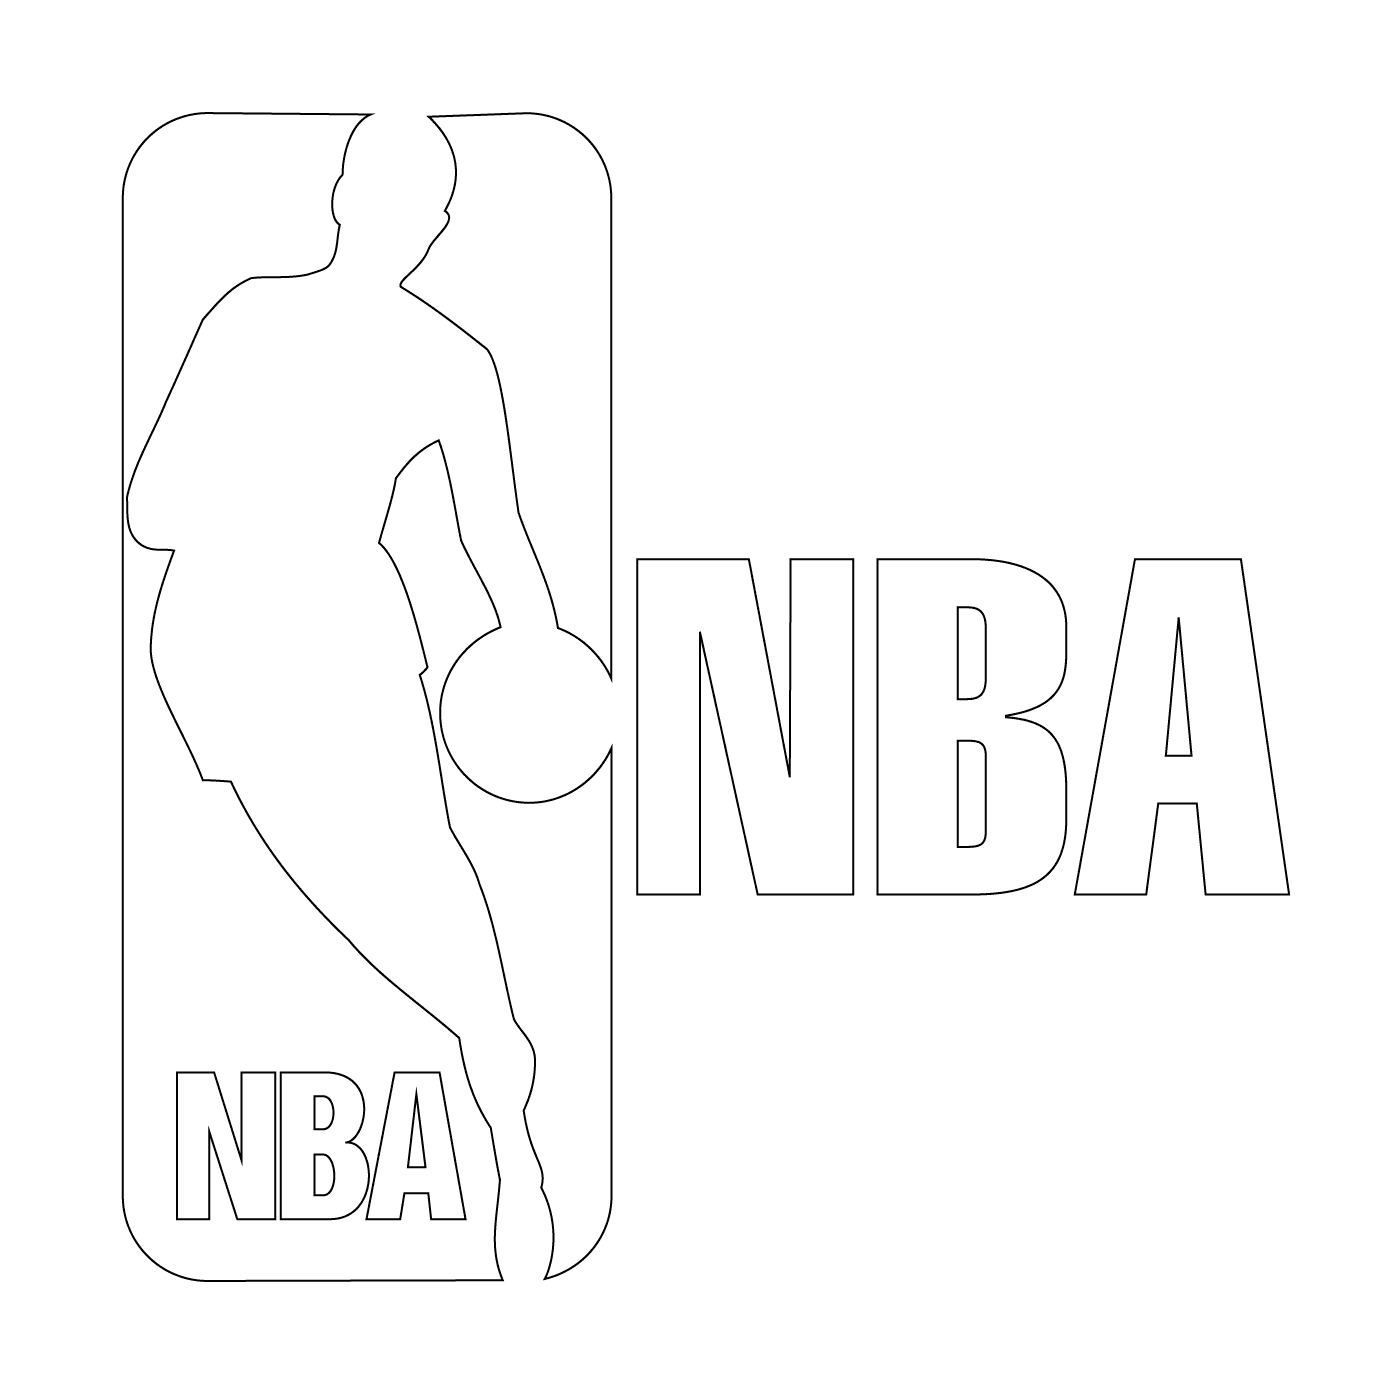  Il logo NBA, un giocatore di basket 